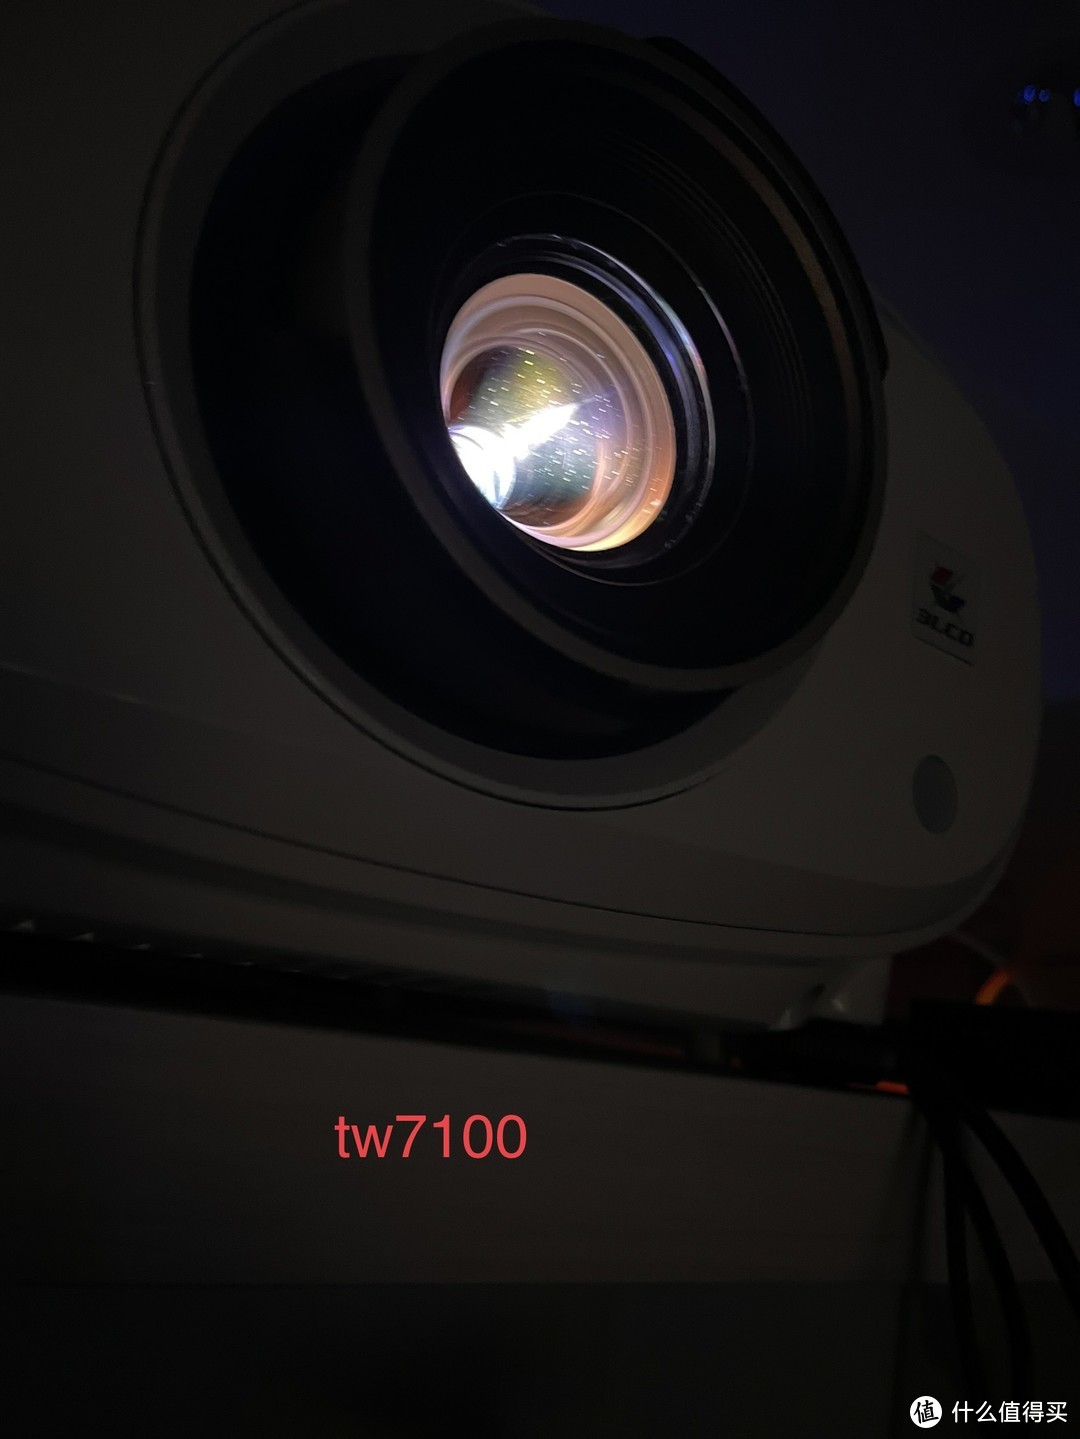 7100.的镜头镀膜偏红